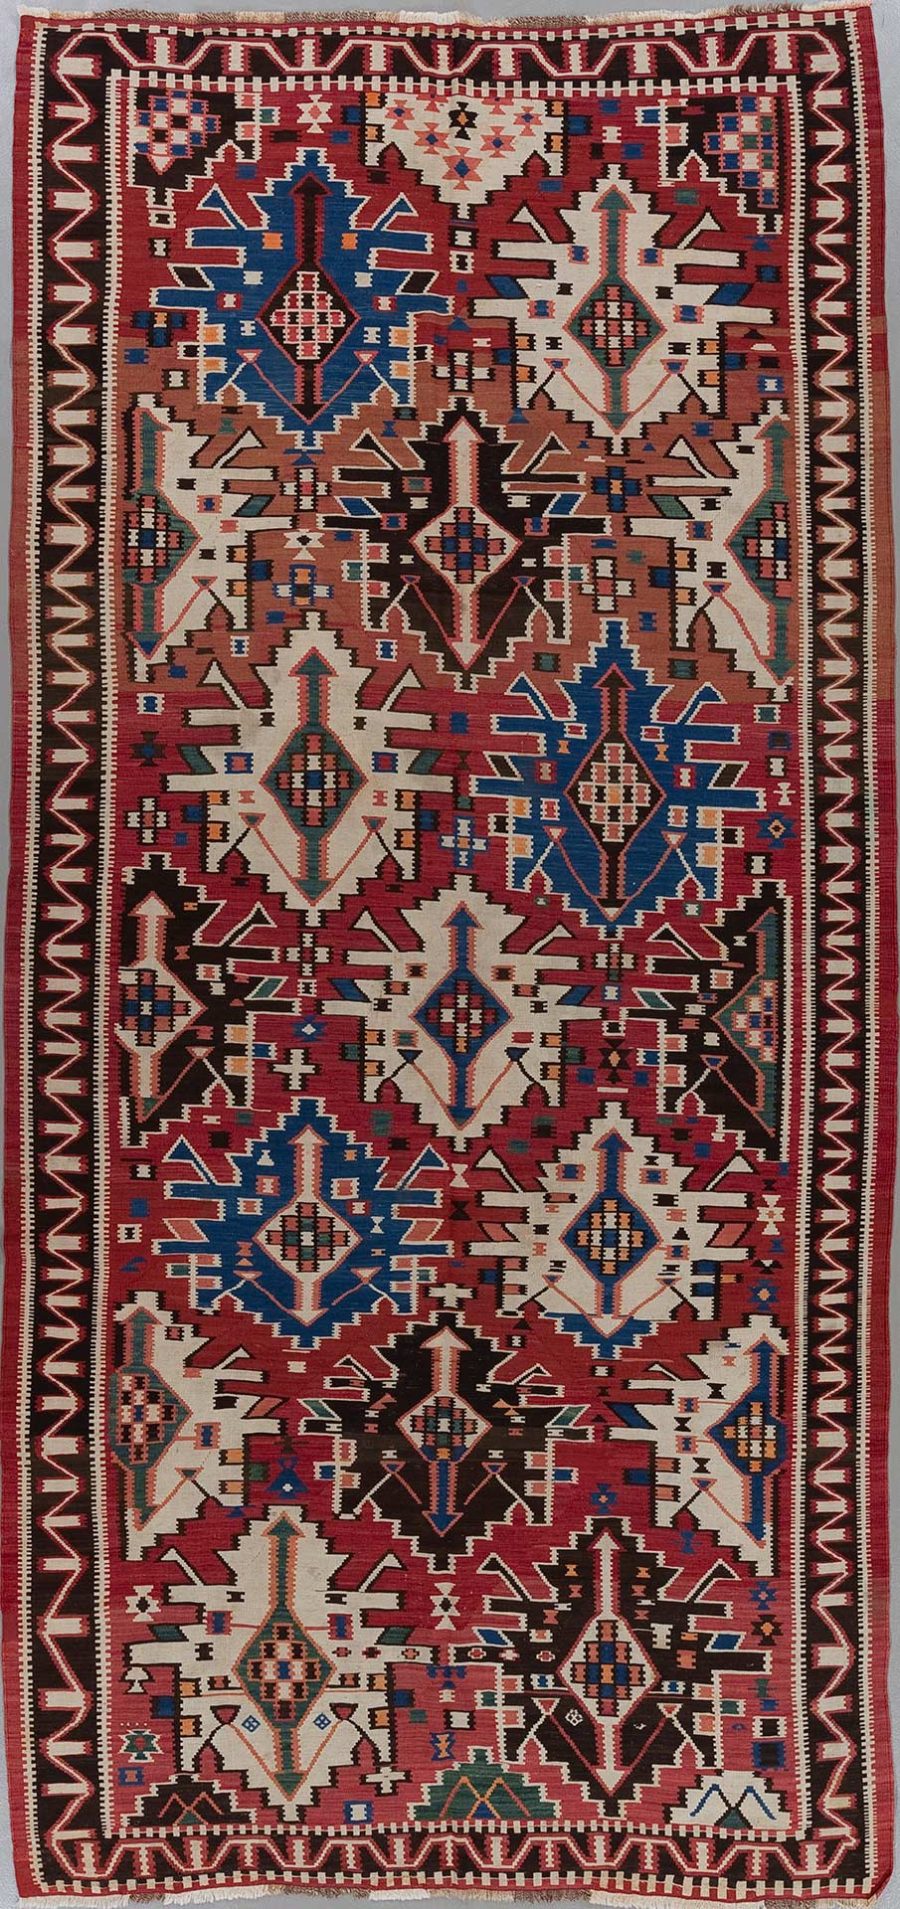 Traditioneller handgewebter Teppich mit komplexen geometrischen Mustern und symbolischen Designs in Rot-, Blau-, Braun- und Cremetönen, mit ausgeprägten Bordüren und fransenlosen Enden.